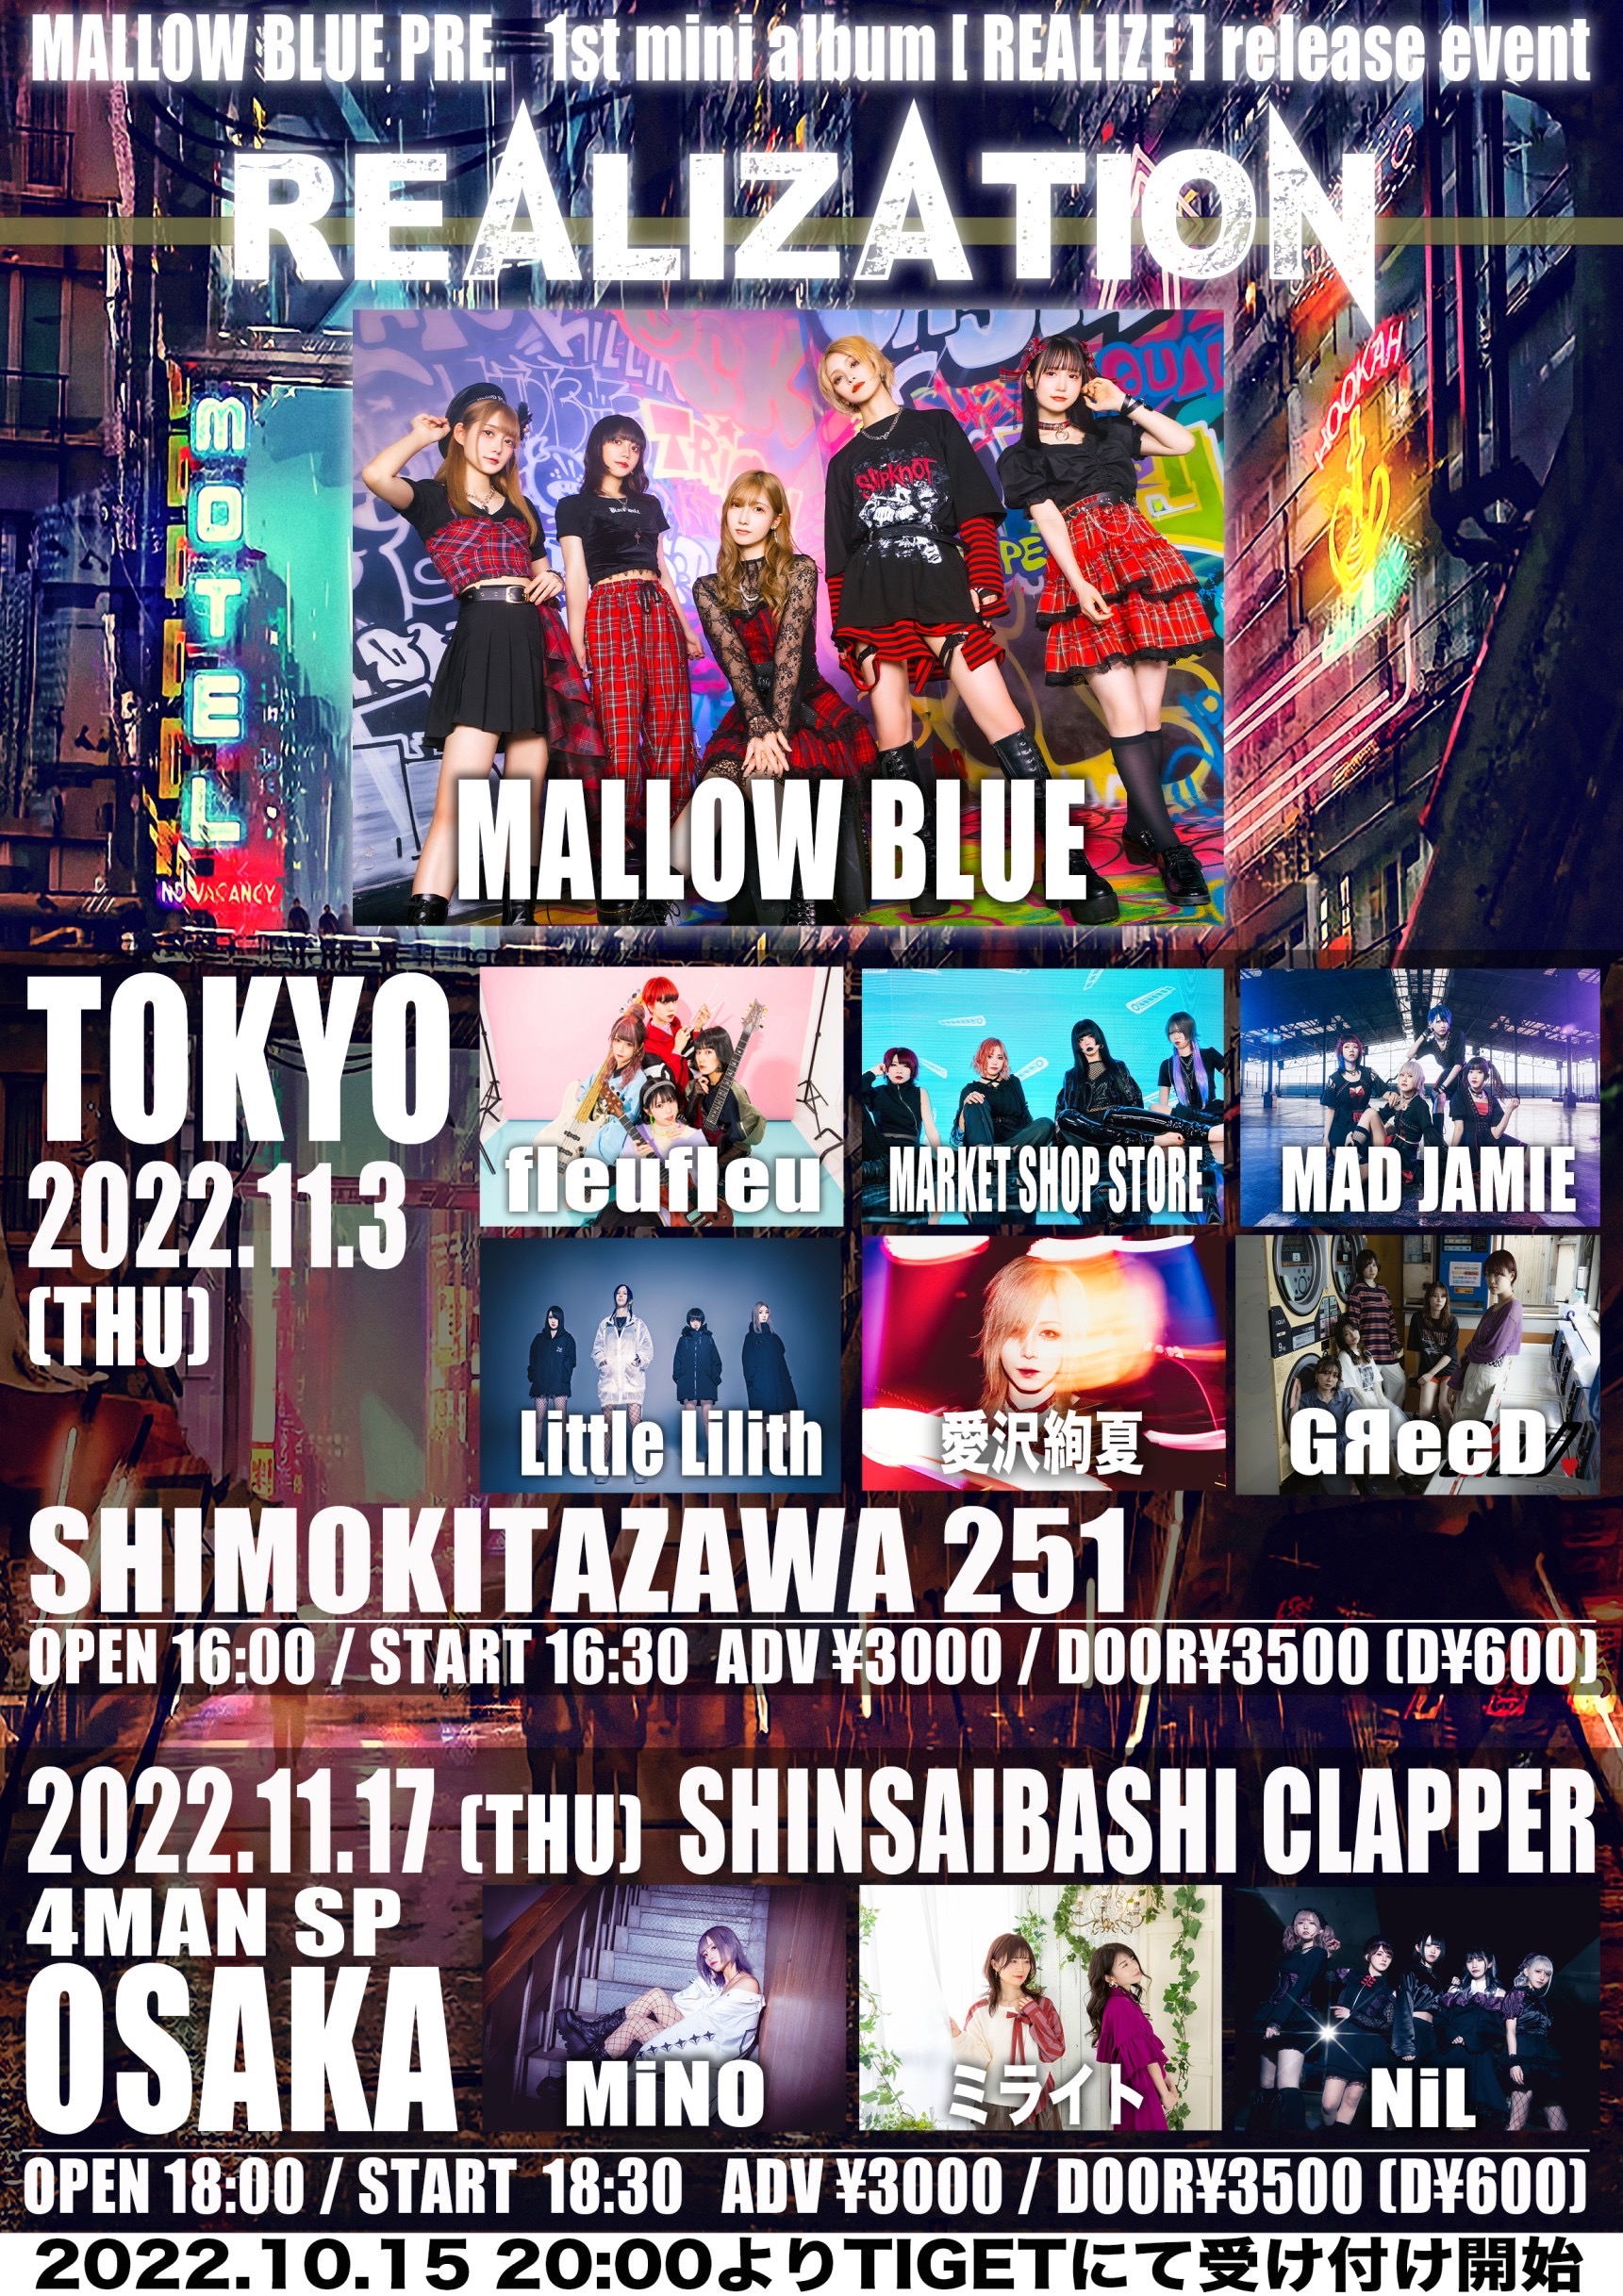 星井あおサポート出演公演『MALLOW BLUE 1st mini album『REALIZE』release event 【REALIZATION -OSAKA-】』